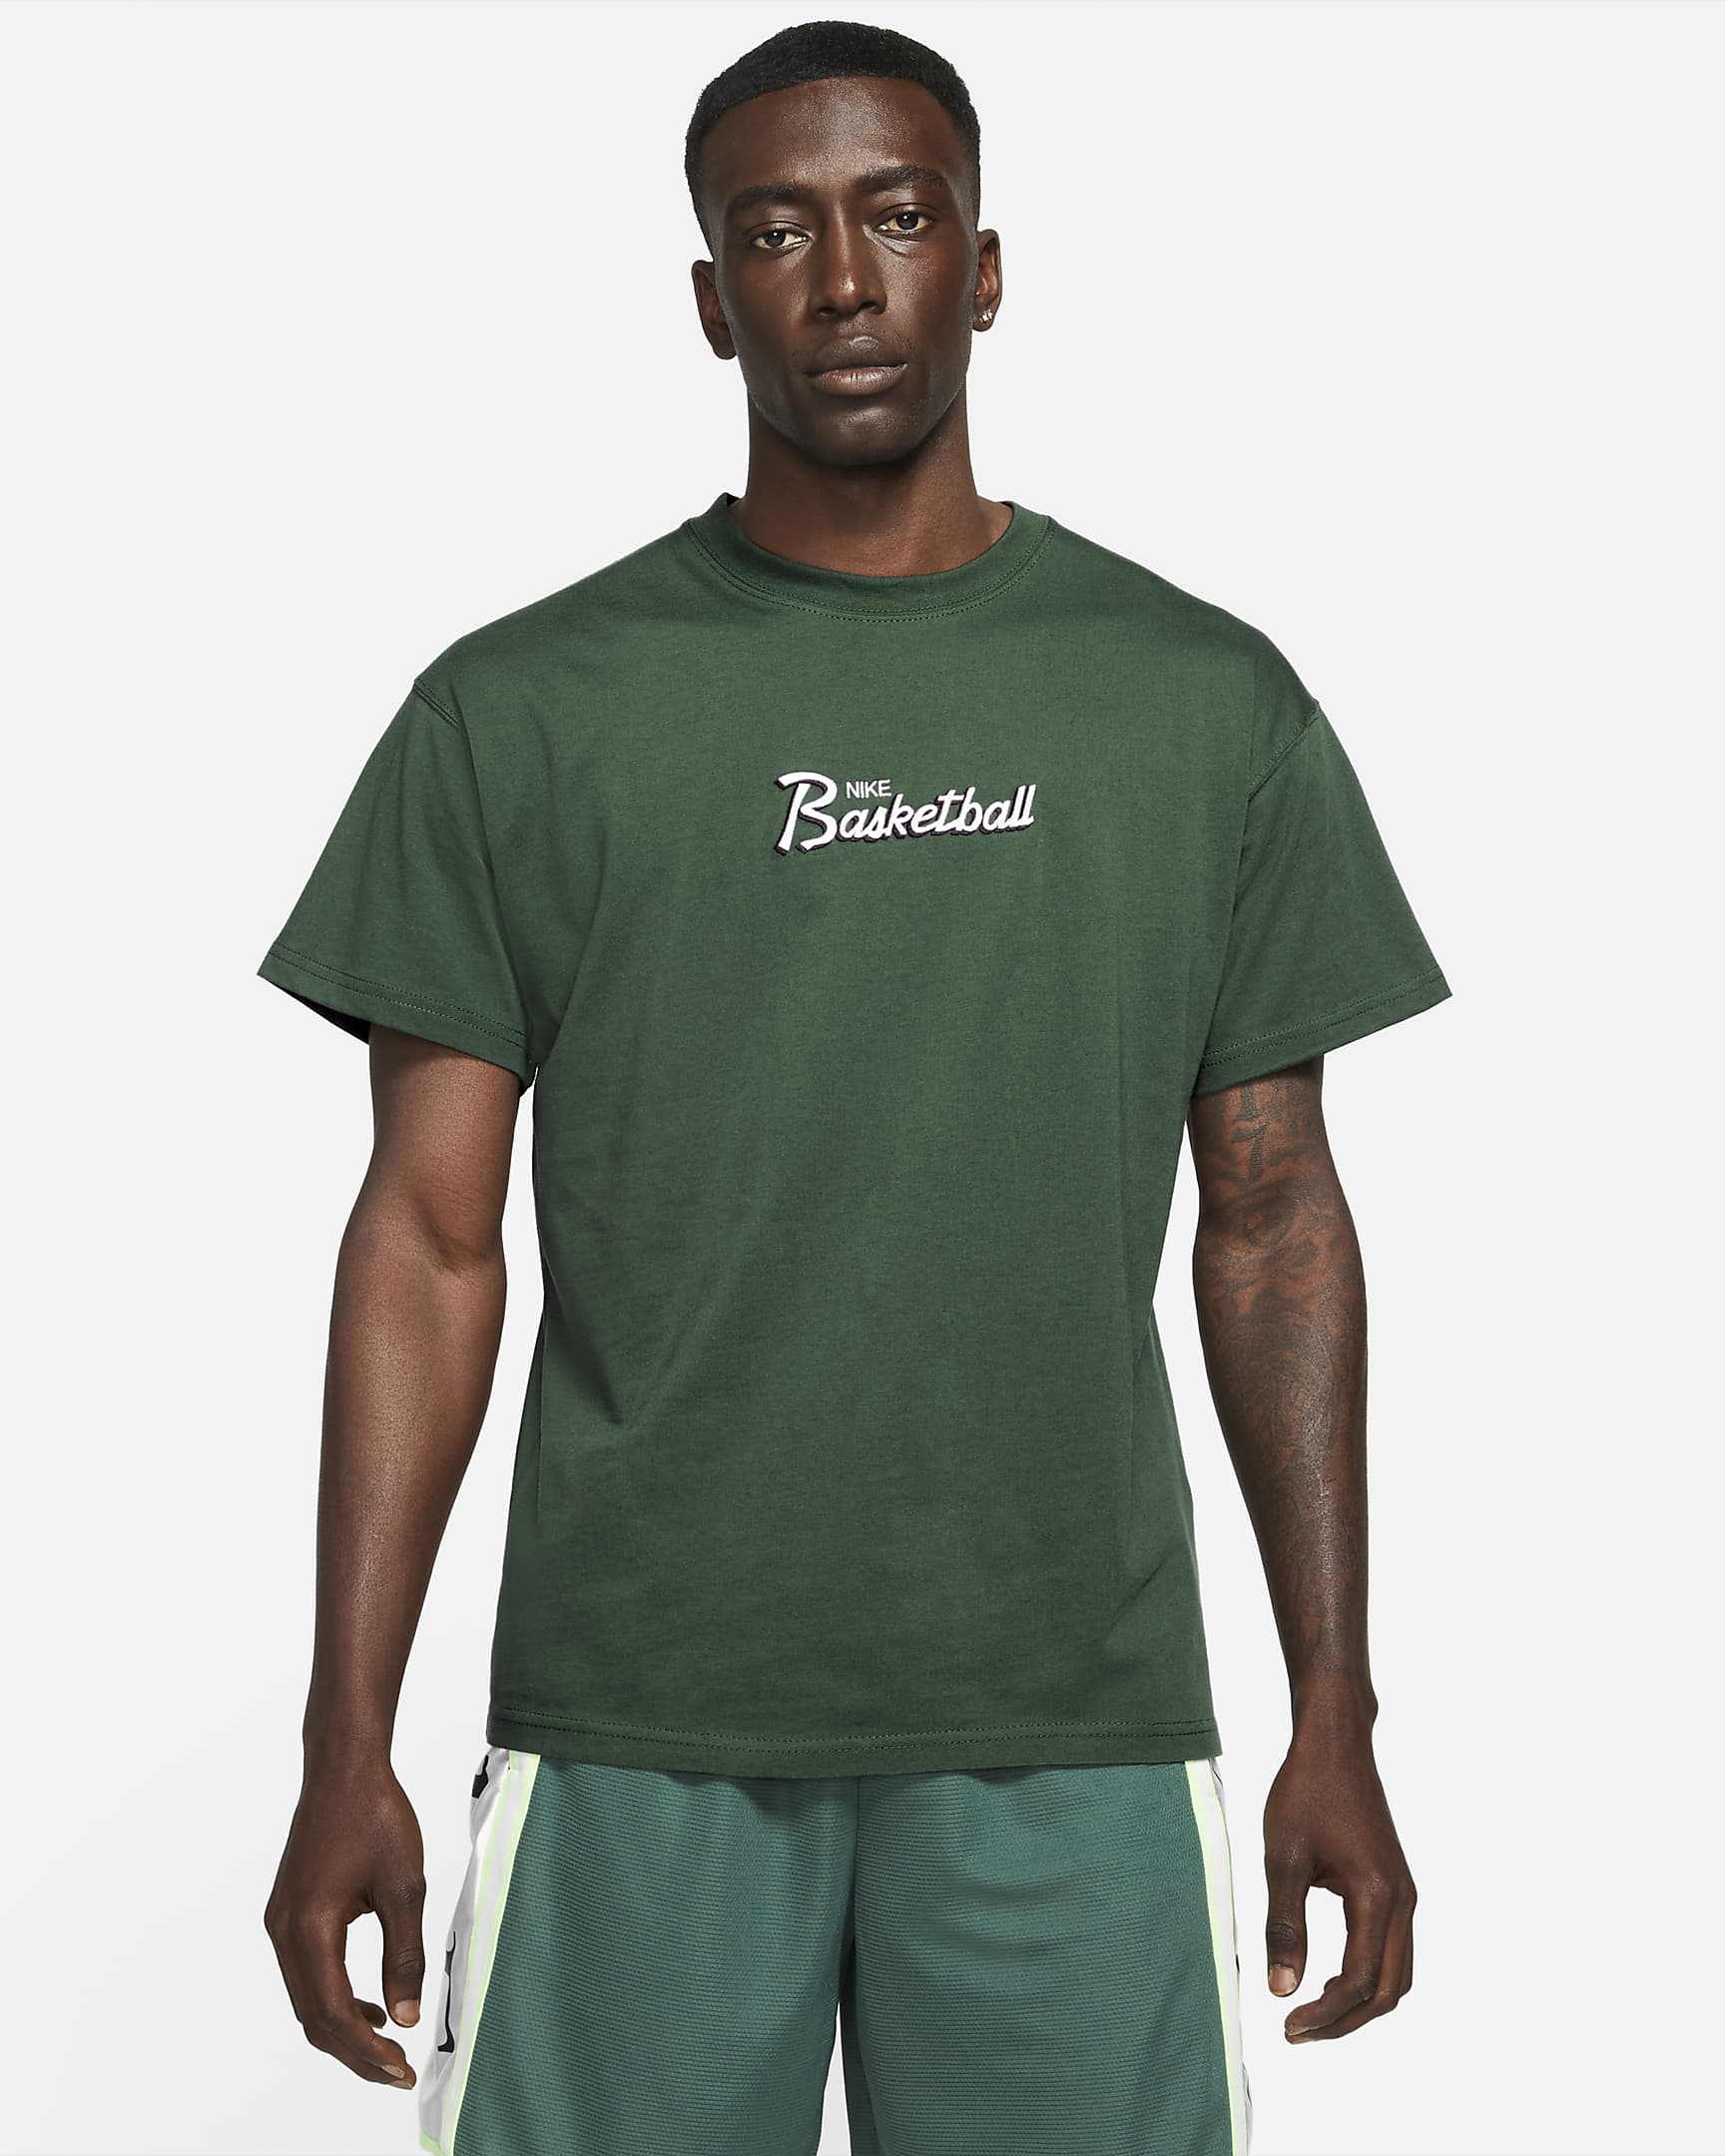 mens-basketball-t-shirt-DqL6TQ.png